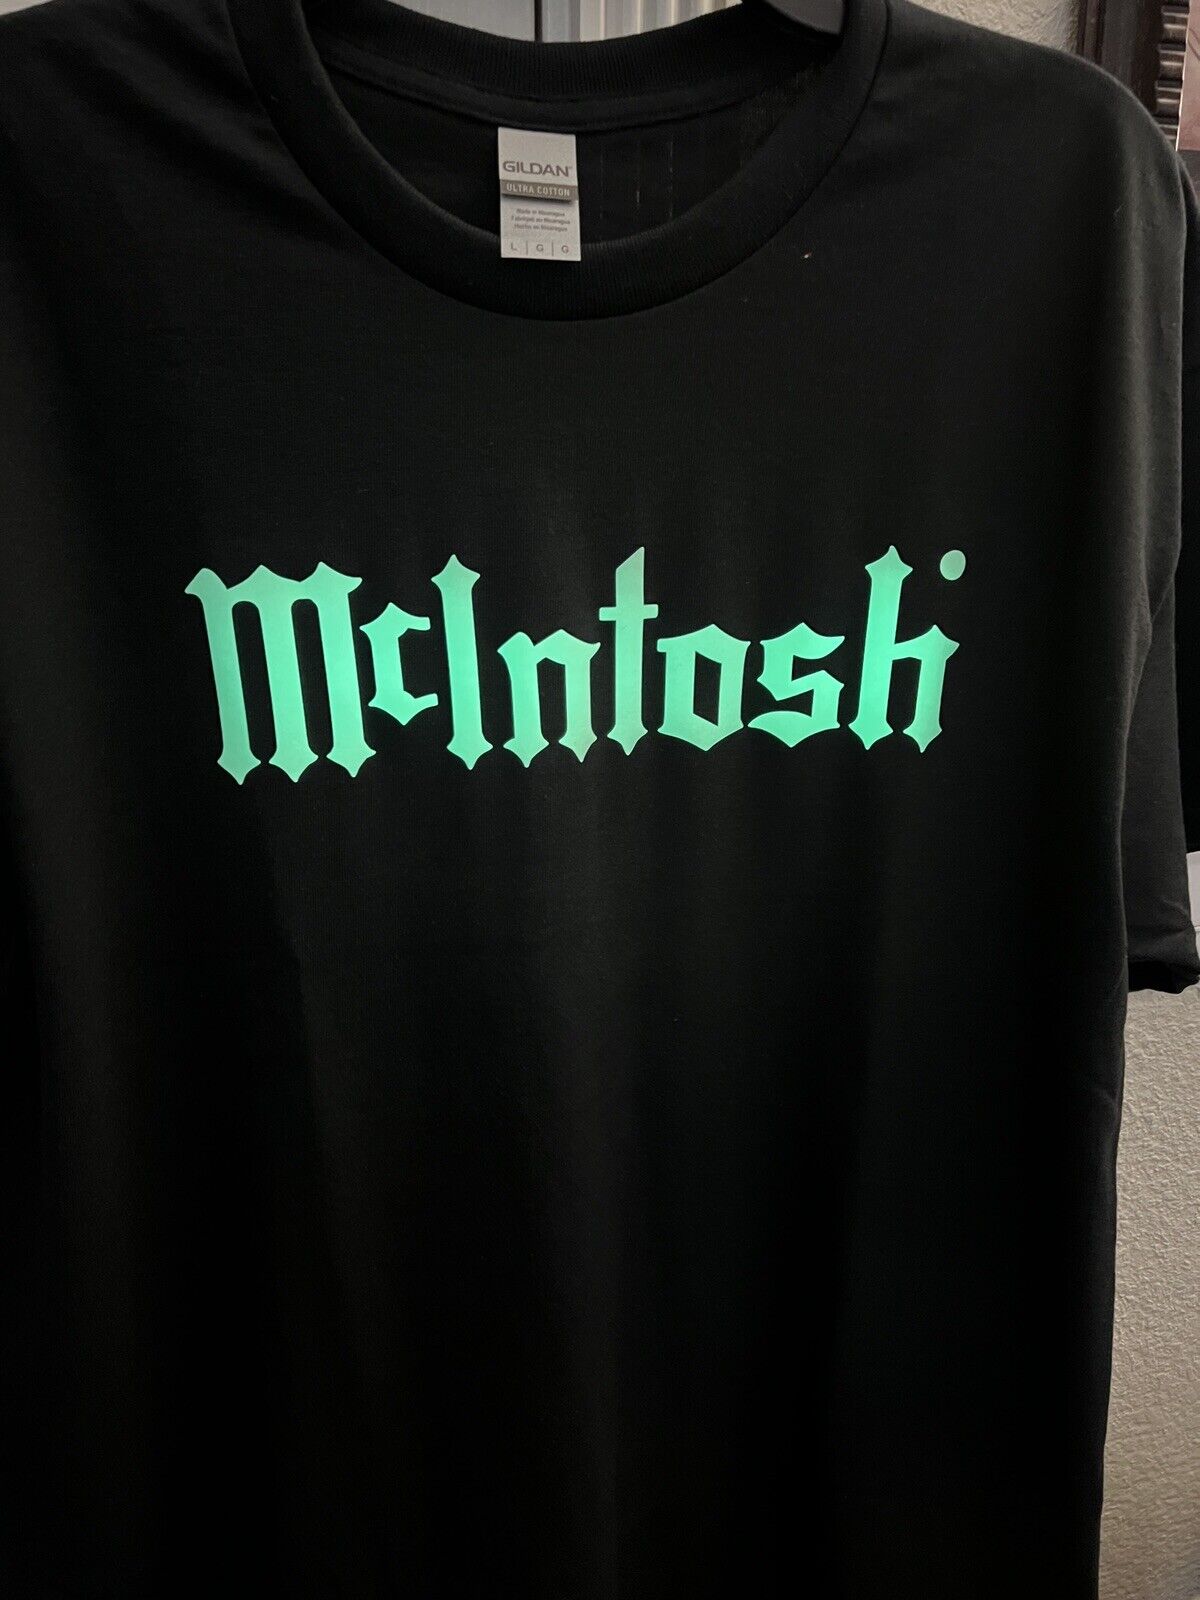 mcintosh amplifier T- Shirt large